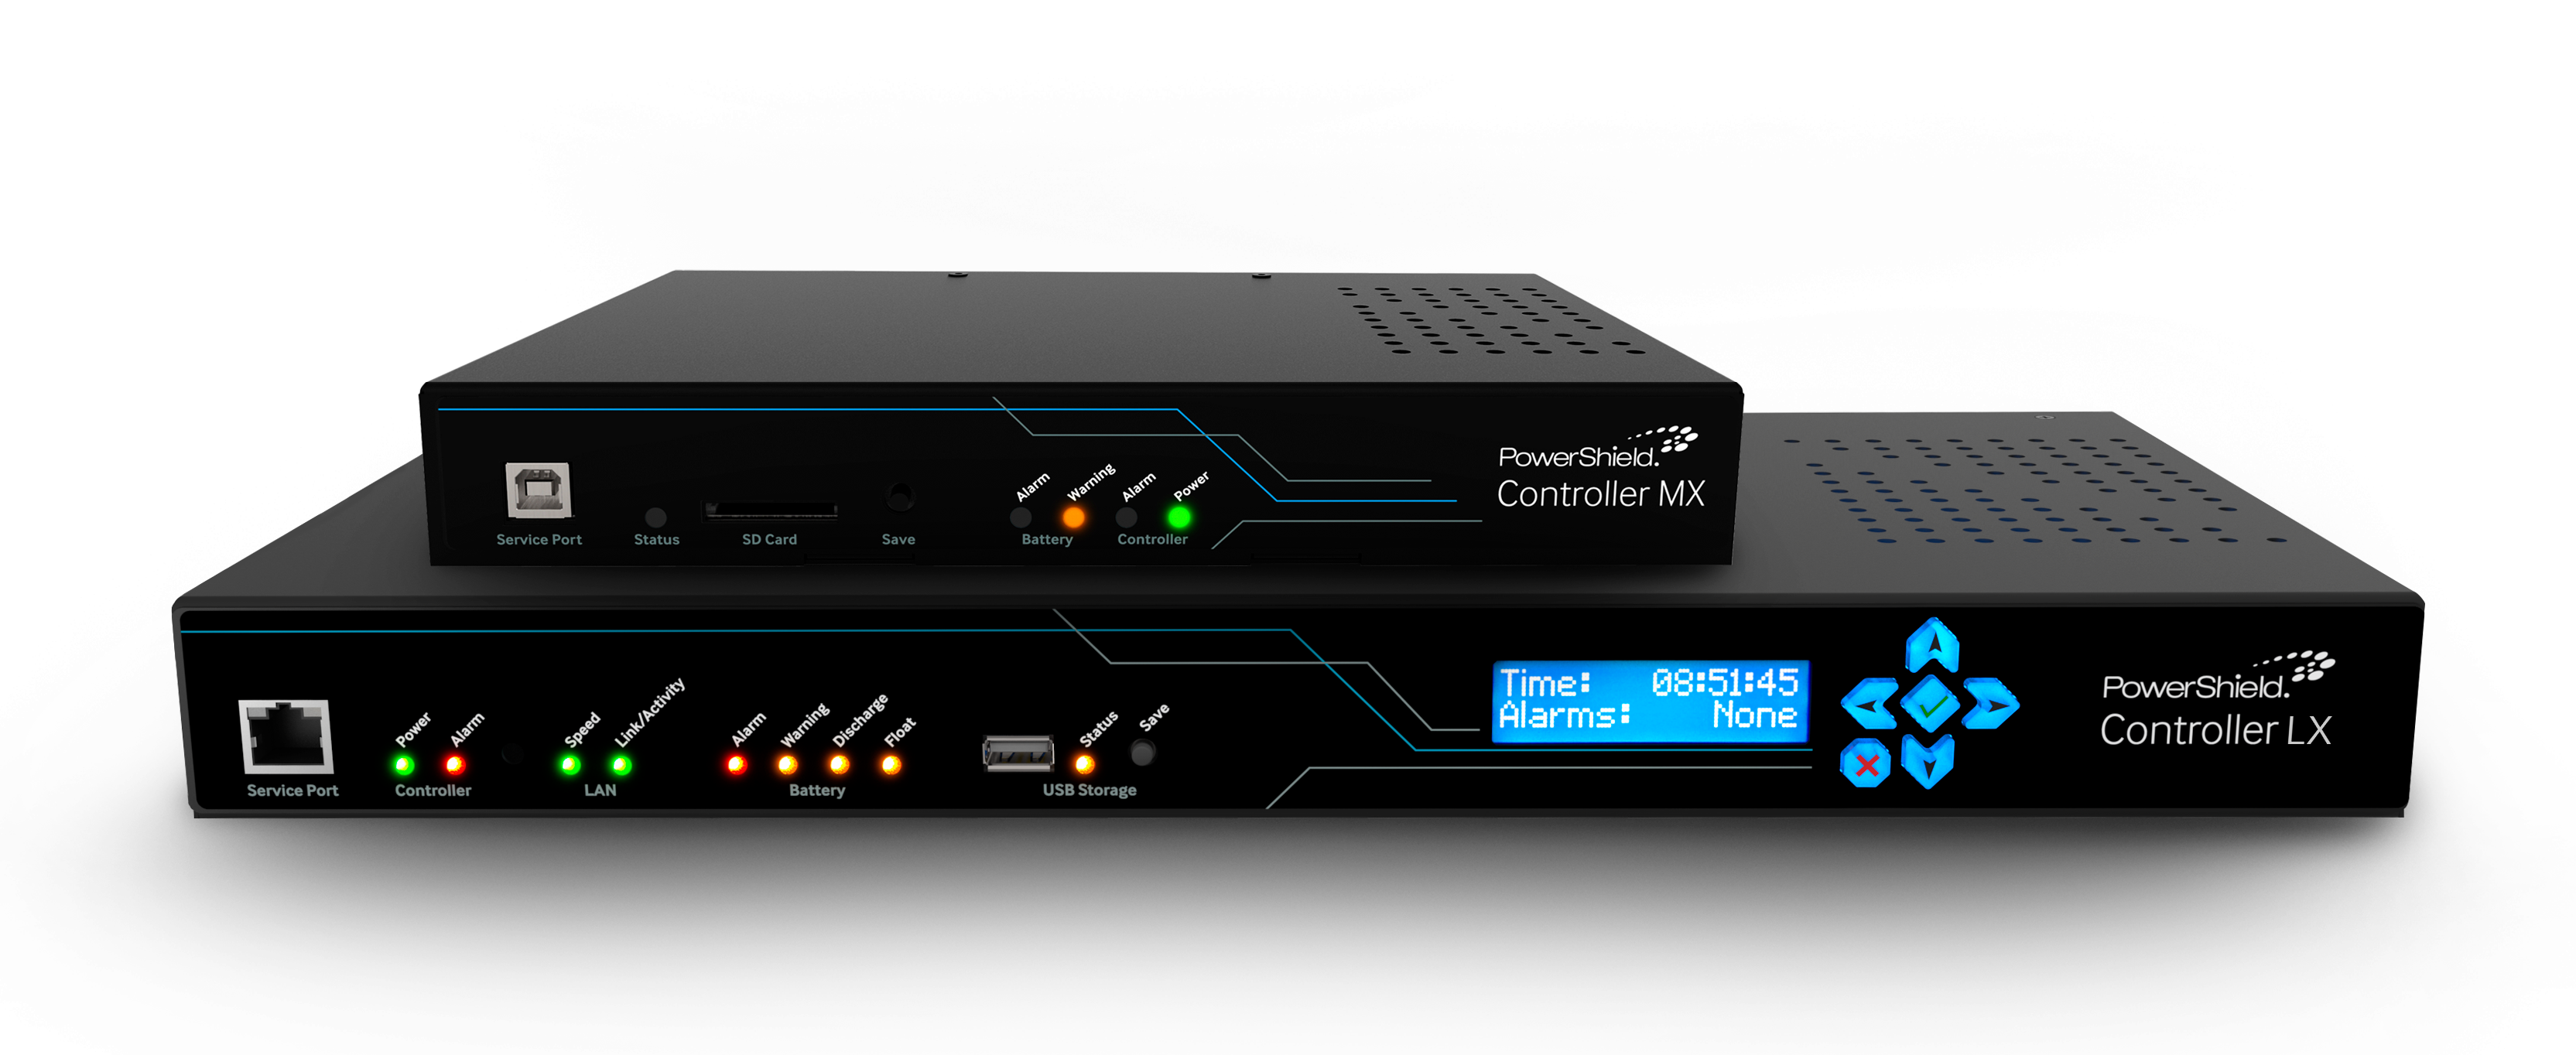 ControllersMX_LXComposite_CC_v2